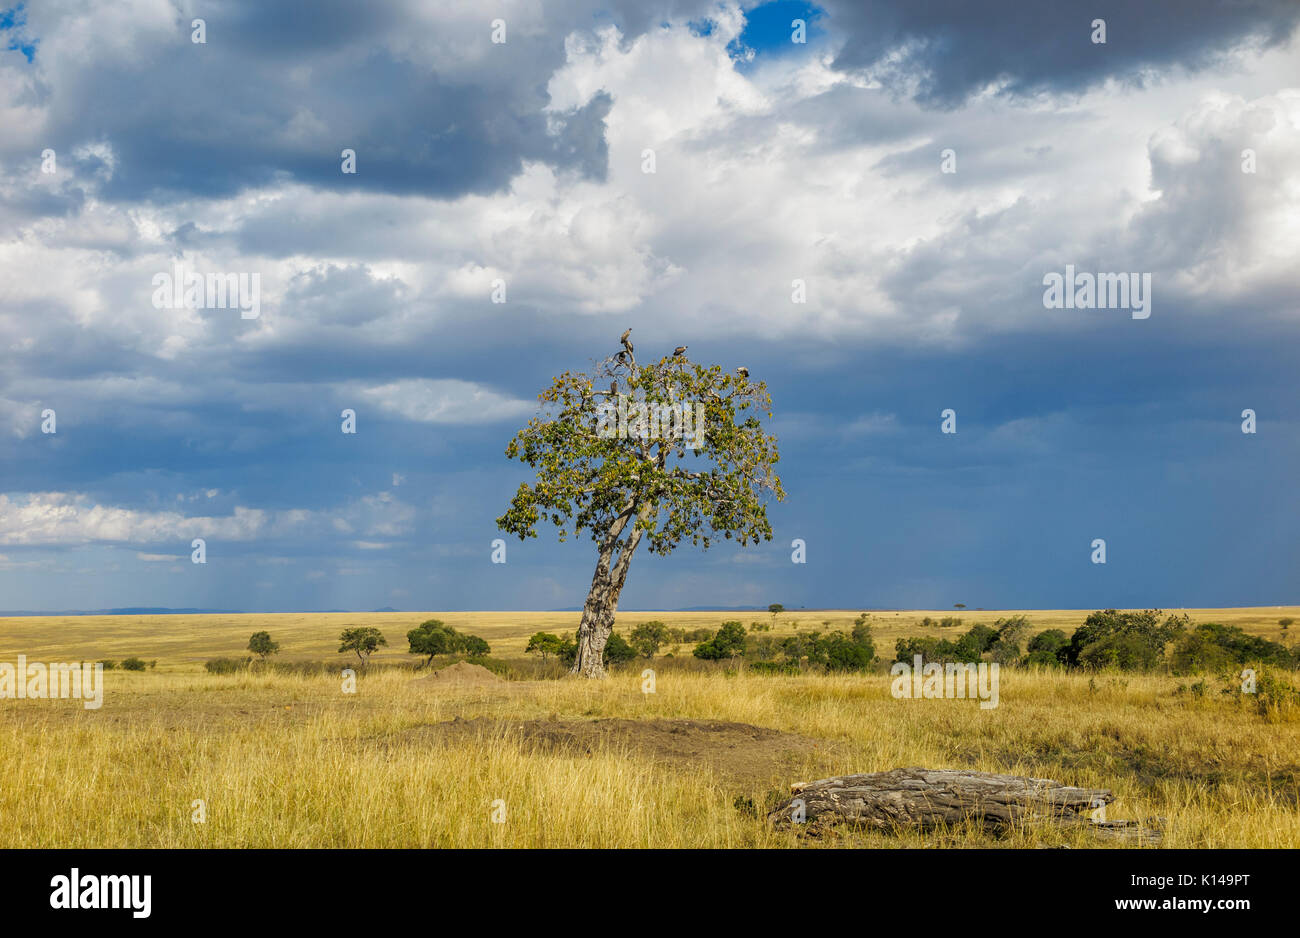 Paisaje de sabana de pastizales en Masai Mara, Kenya con los buitres donde se posan en un árbol contra un cielo nublado con acercarse a las nubes de lluvia Foto de stock